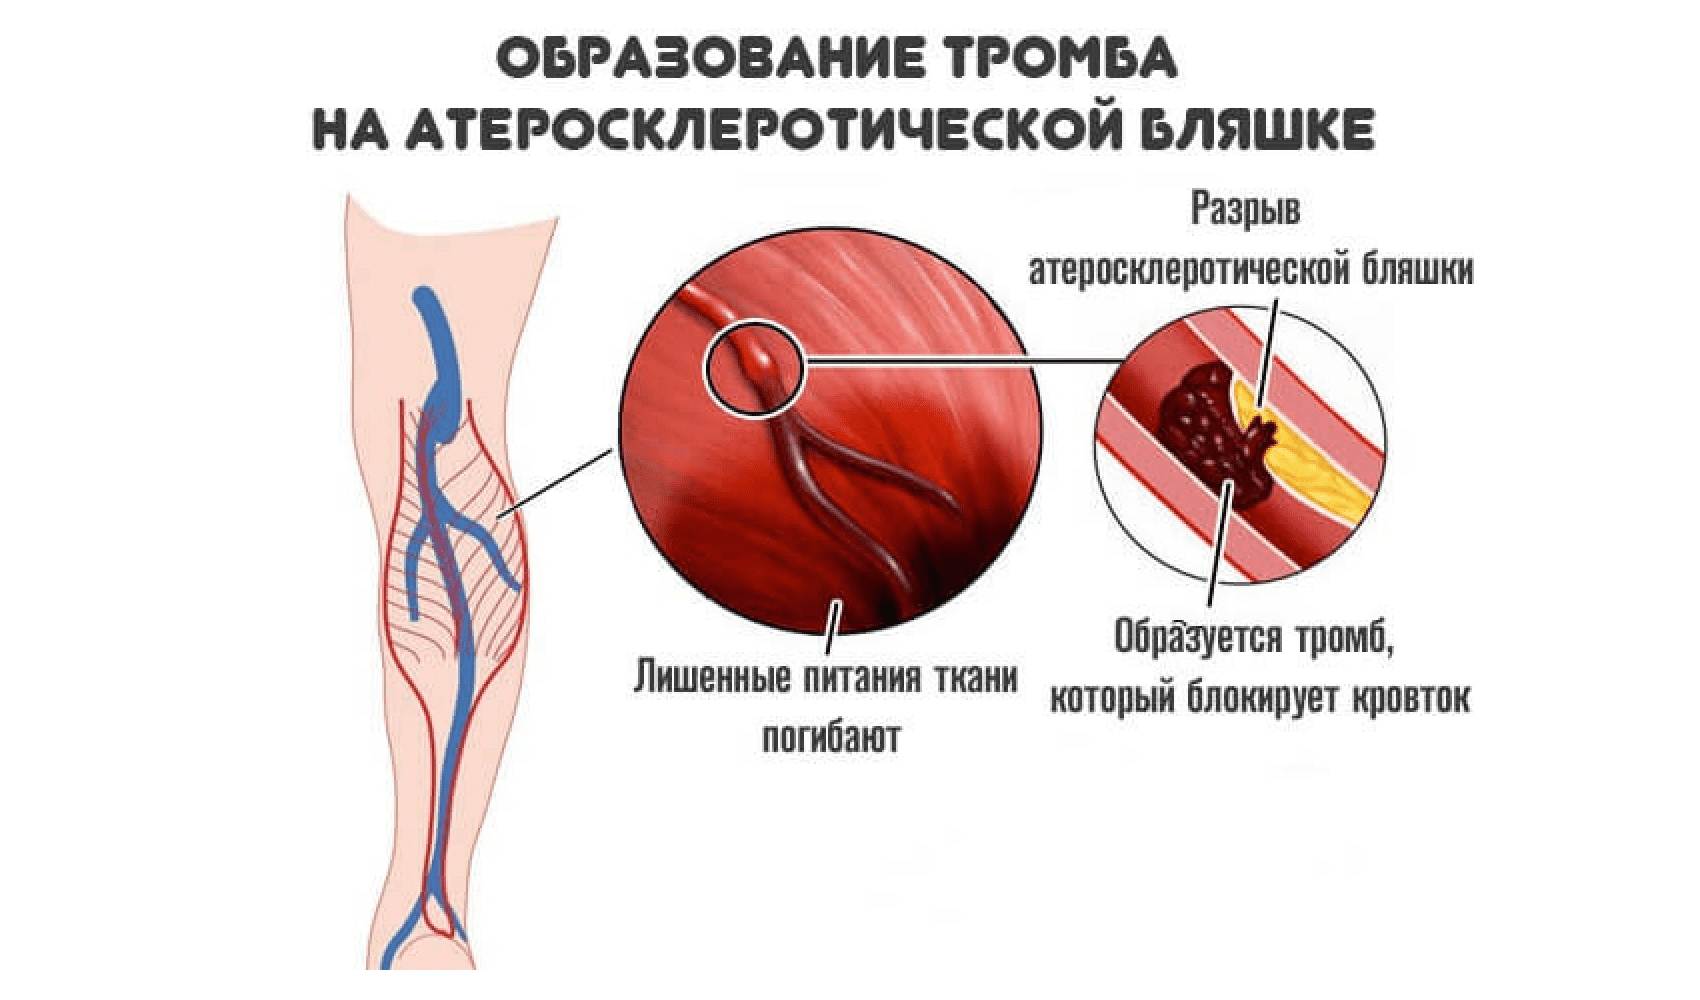 Развития тромбов. Образование тромбов в артериях. Атеросклеротическая бляшка и тромб.